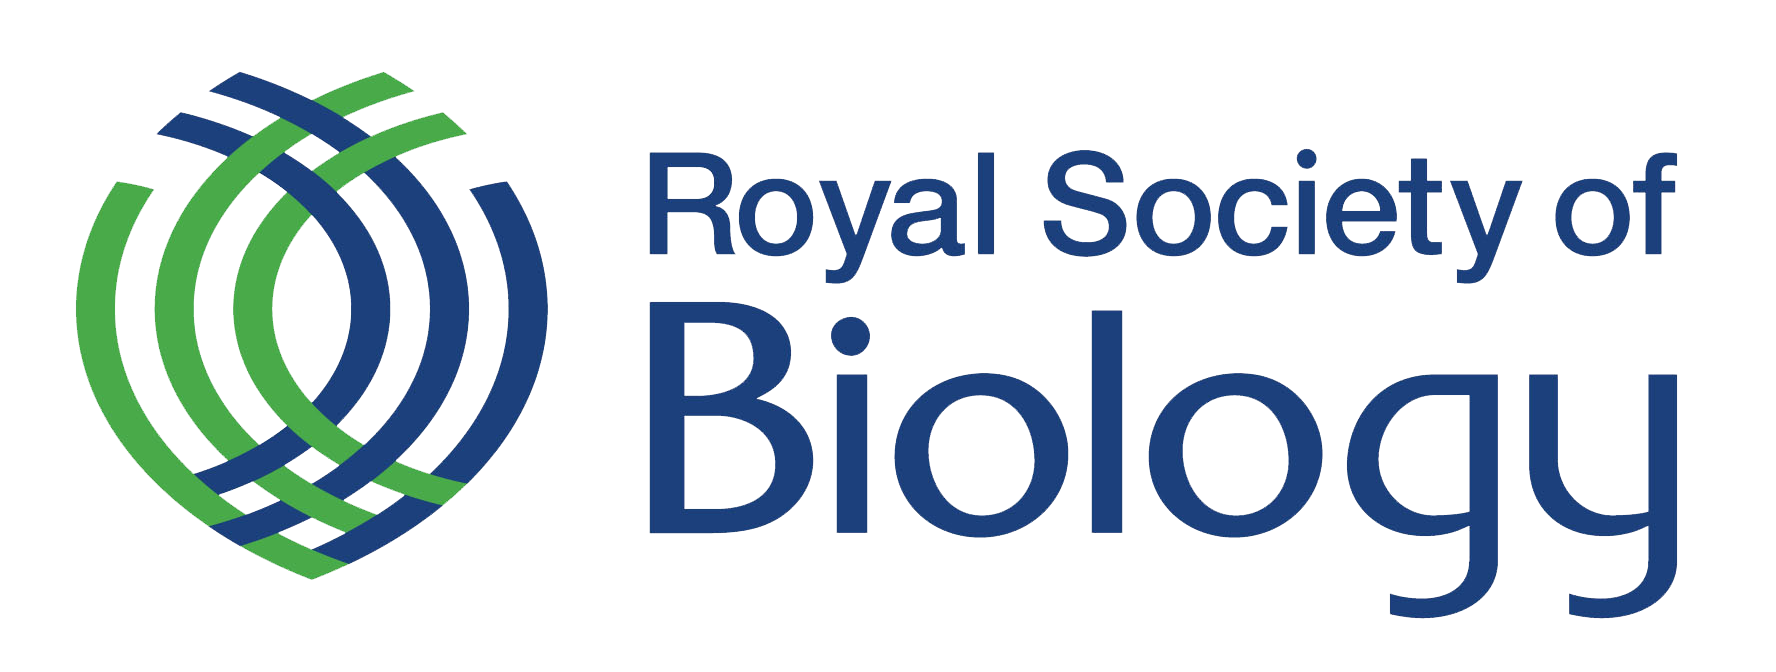 RSB logo clear